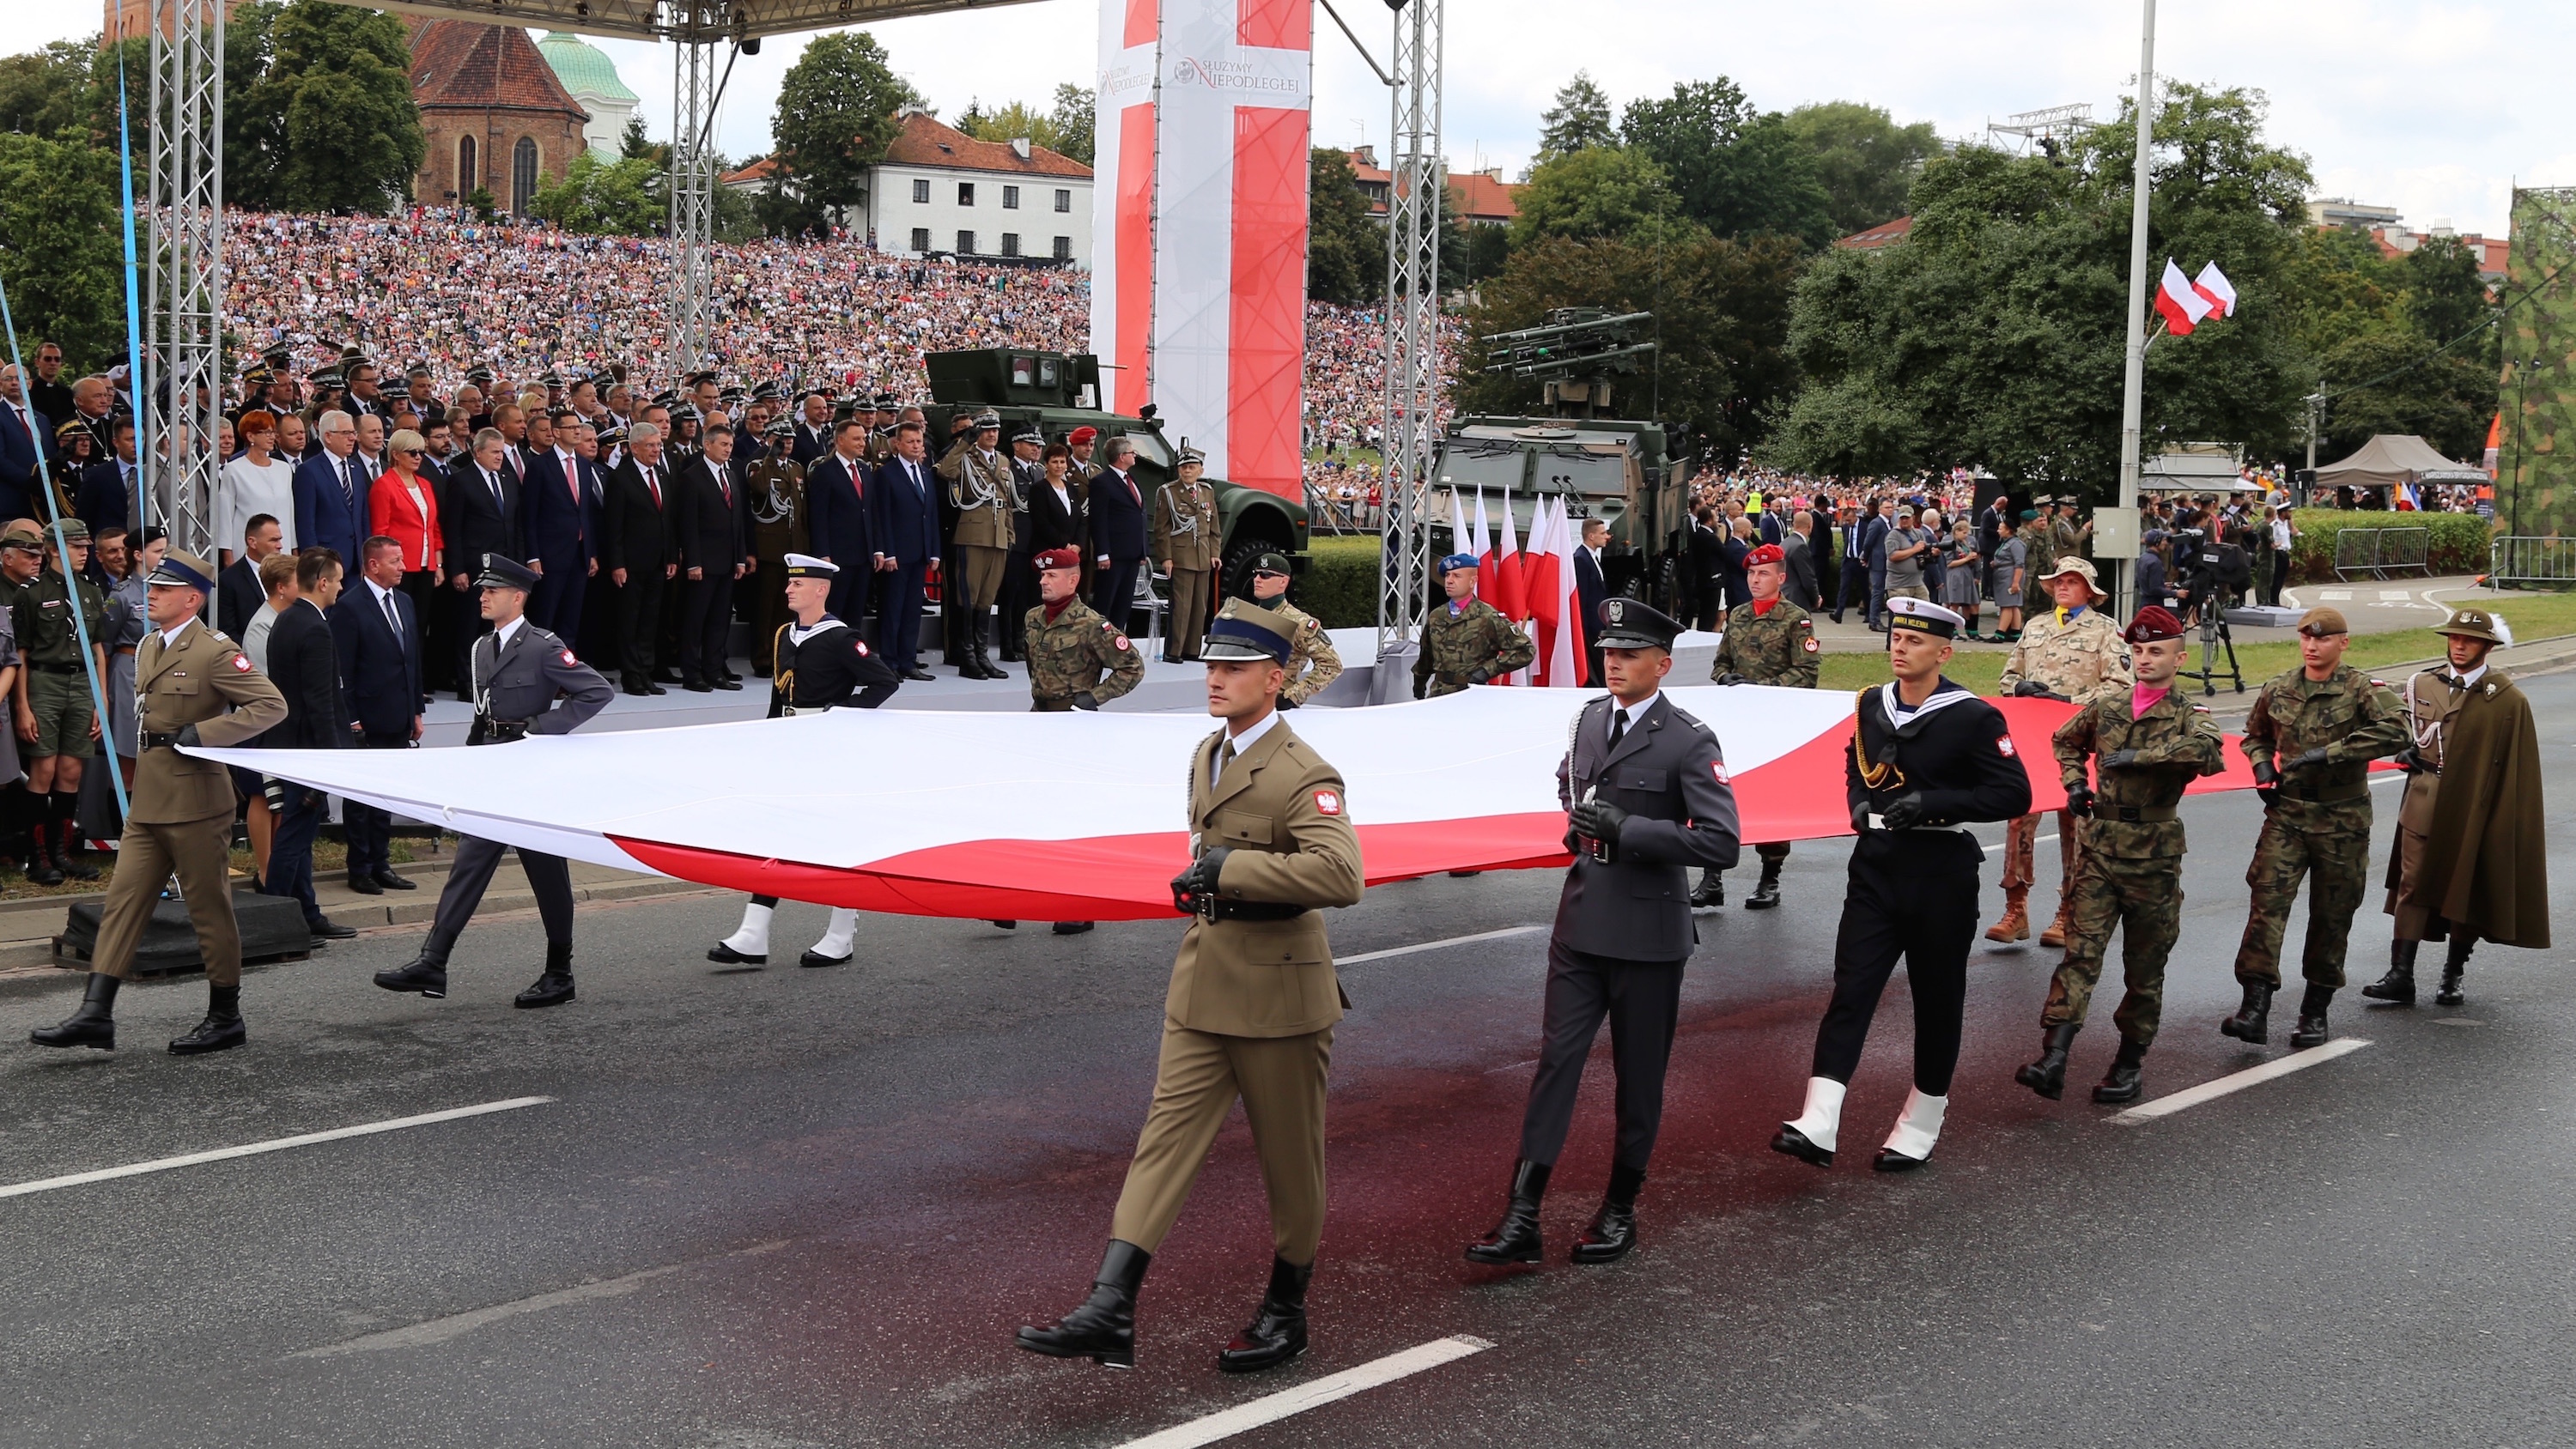 Defiladę otwierali żołnierze niosący dużych rozmiarów biało-czerwoną flagę. Fot. Rafał Lesiecki / Defence24.pl